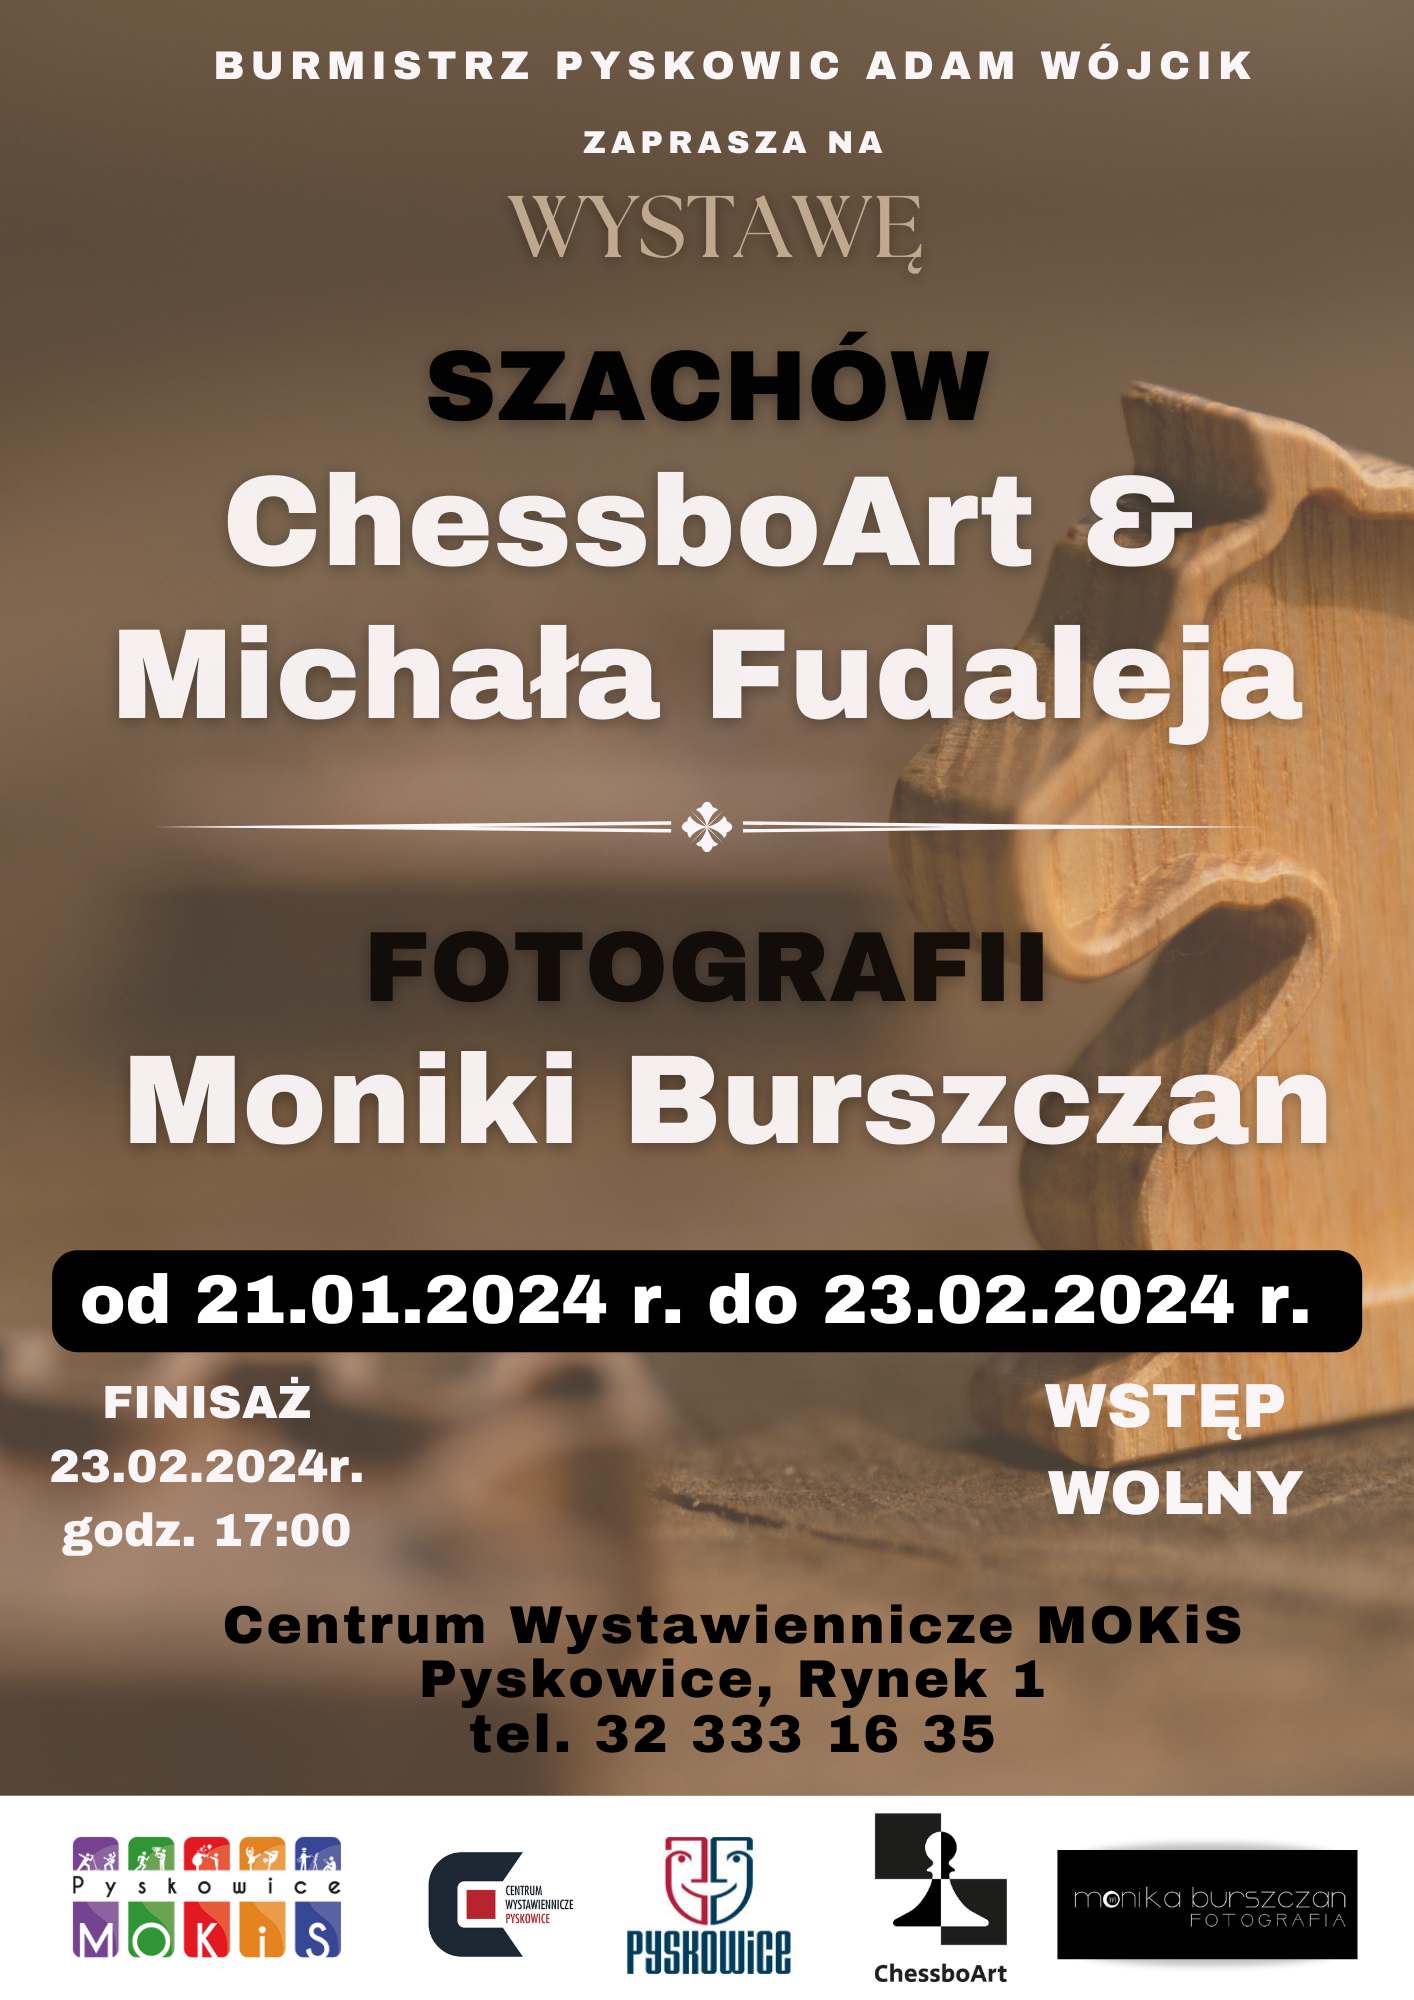 Plakat promujący wystawę Szachów GhessboArt & Michała Fudaleja oraz fotografii Moniki Burszczan